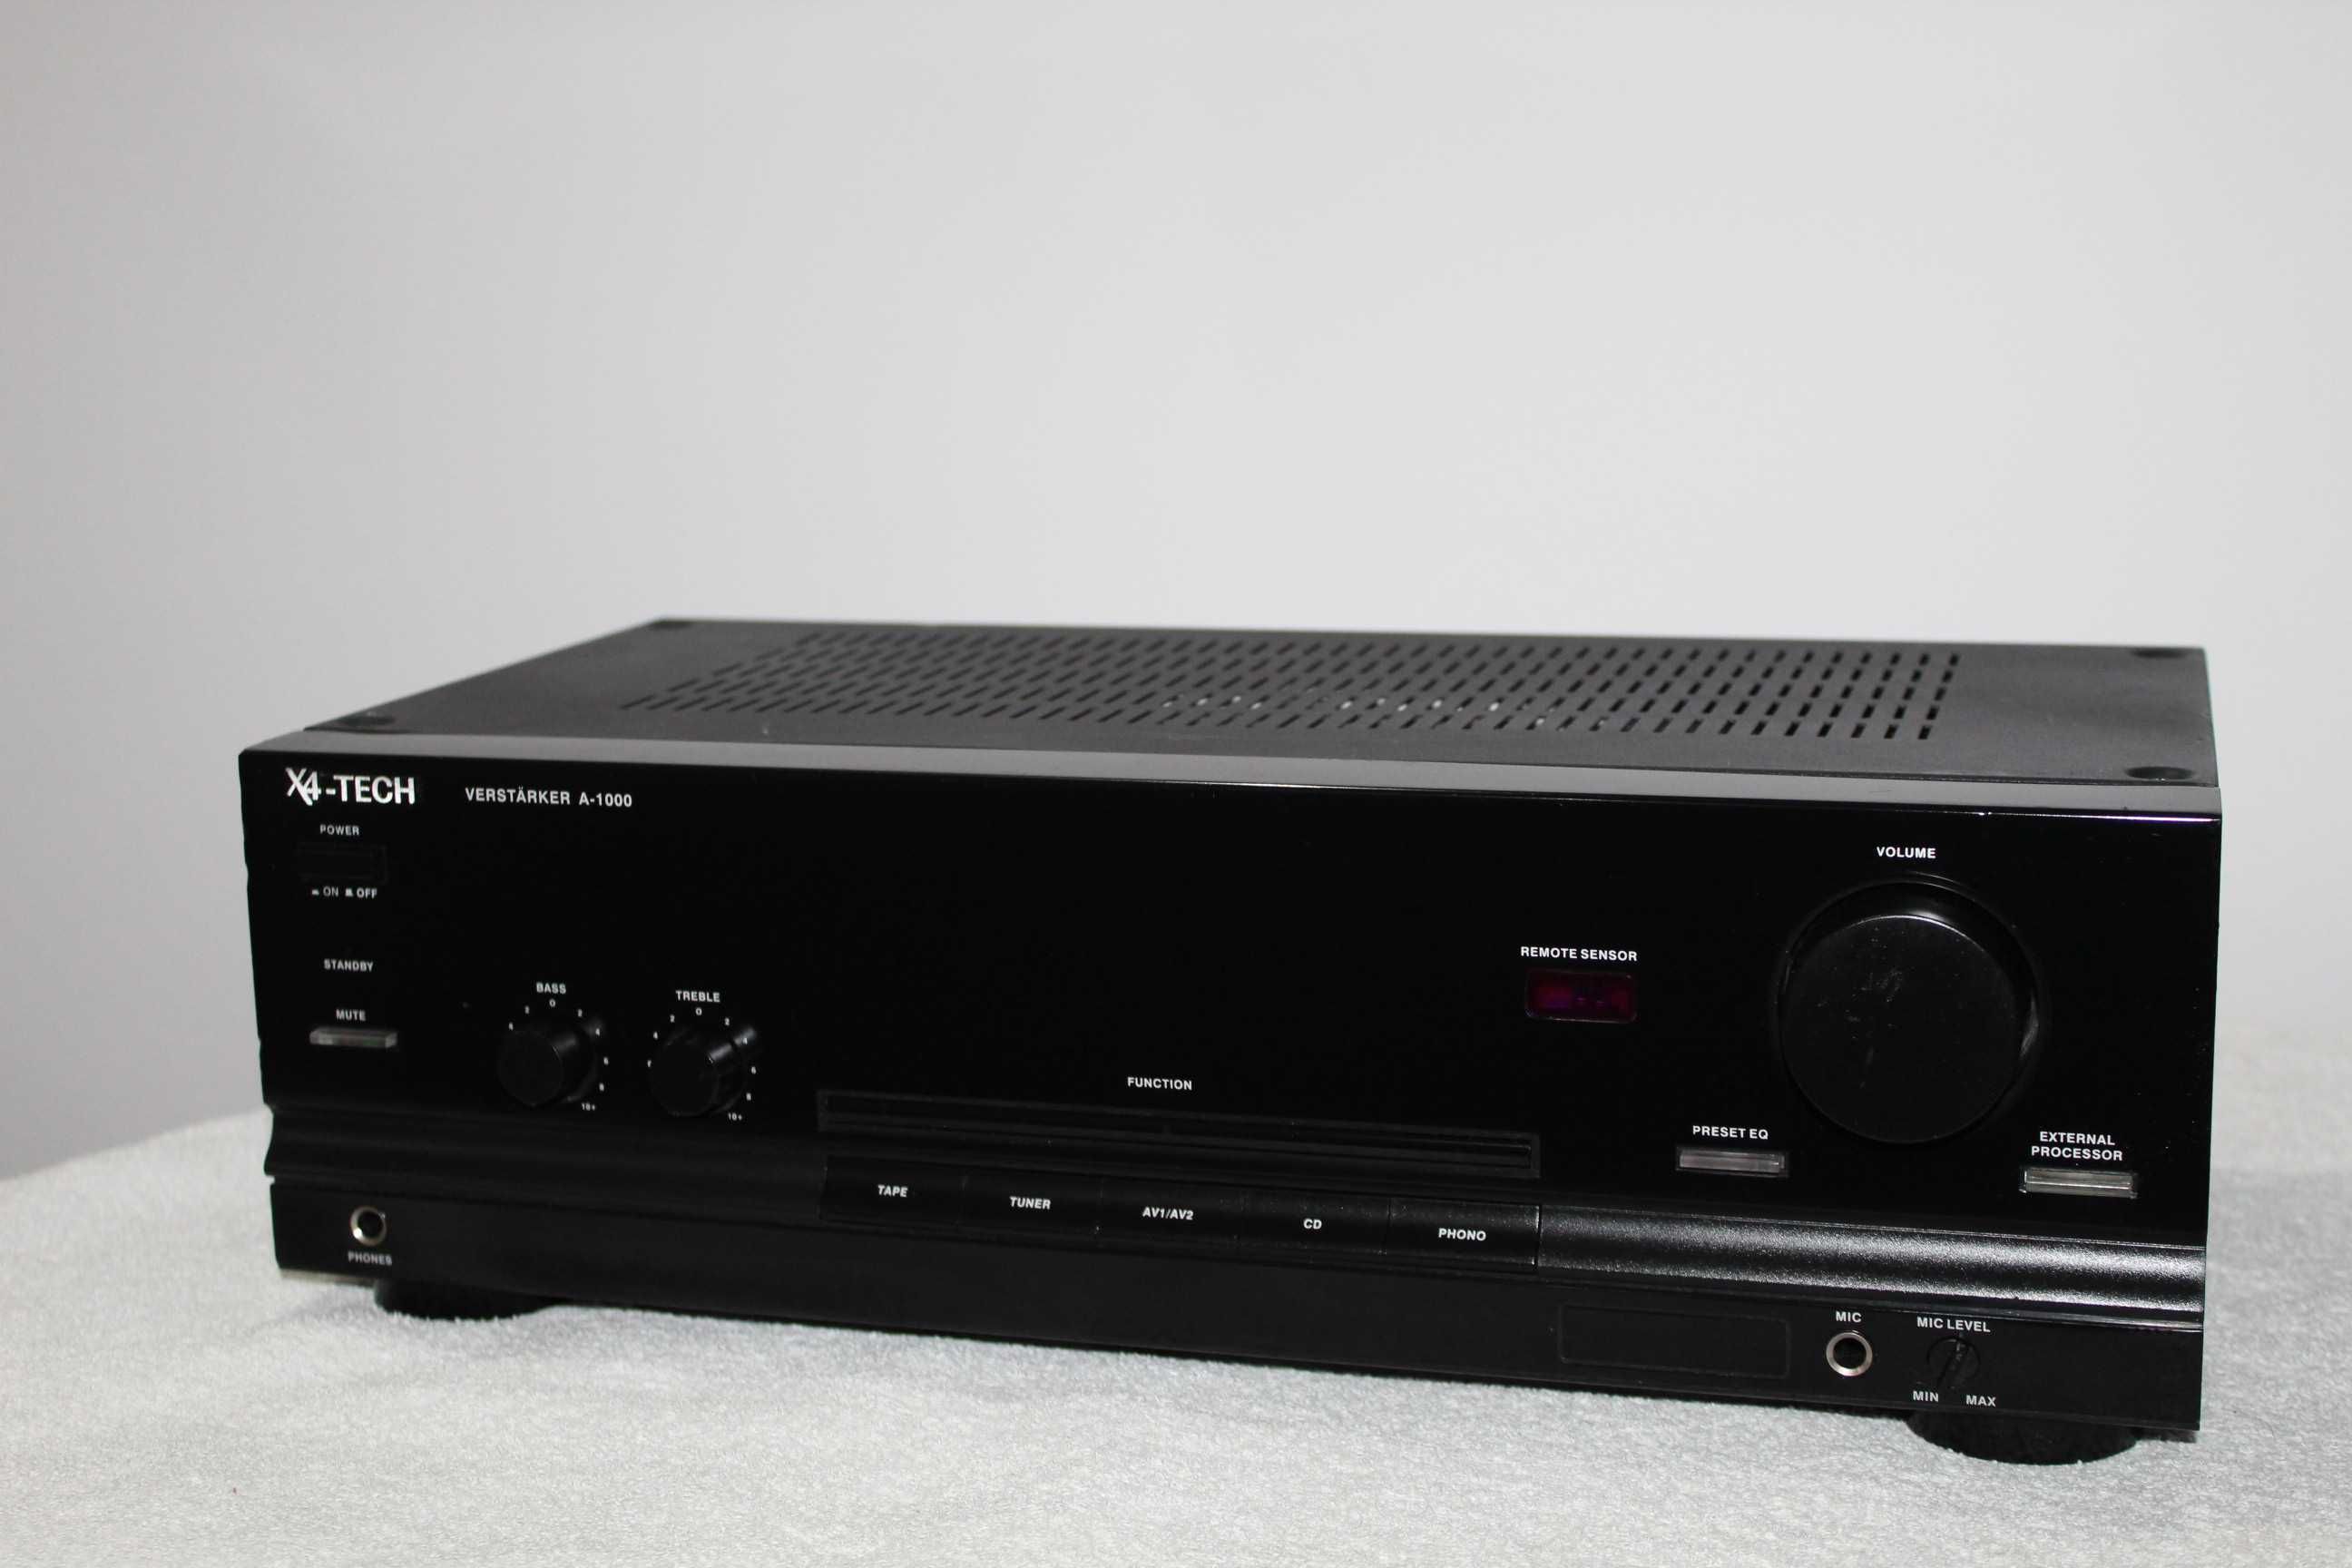 X4-TECH A-1000 Wzmacniacz stereo hi-fi Wysyłka